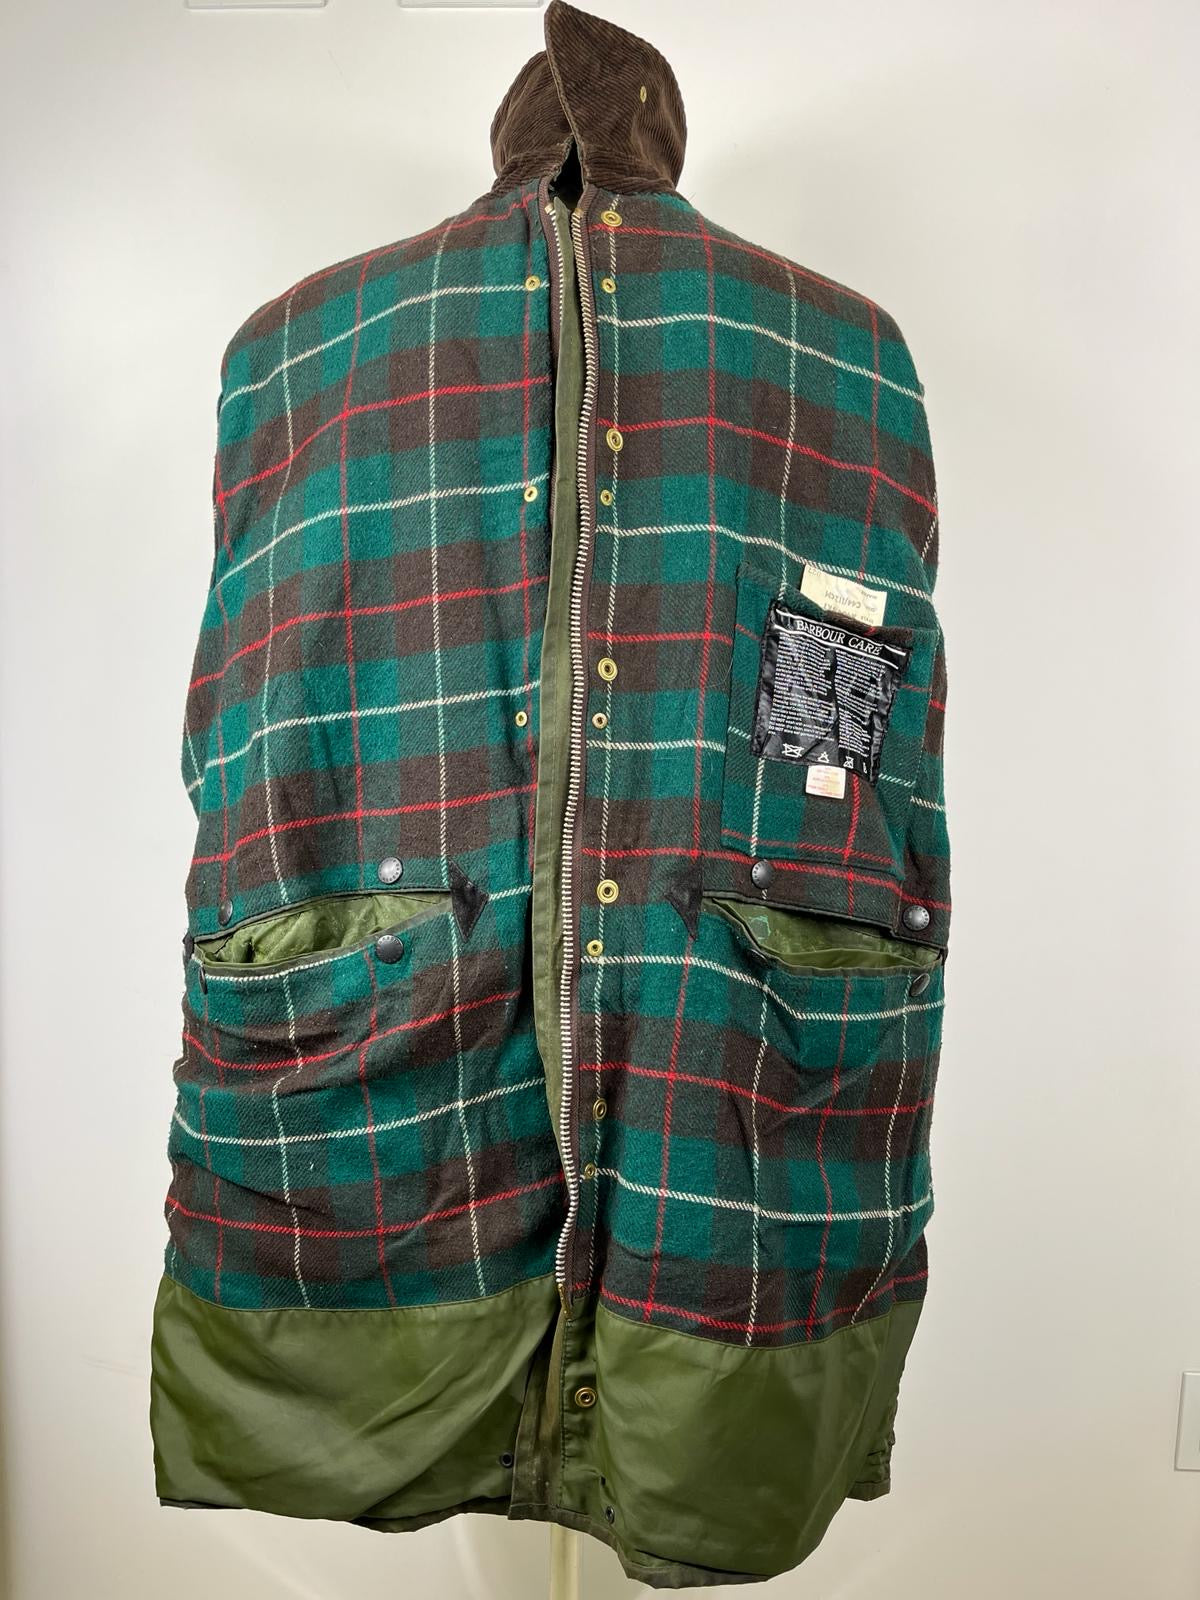 Giacca Barbour Vintage Northumbria verde C44/112cm-Vintage Northumbria Wax Jacket L/XL